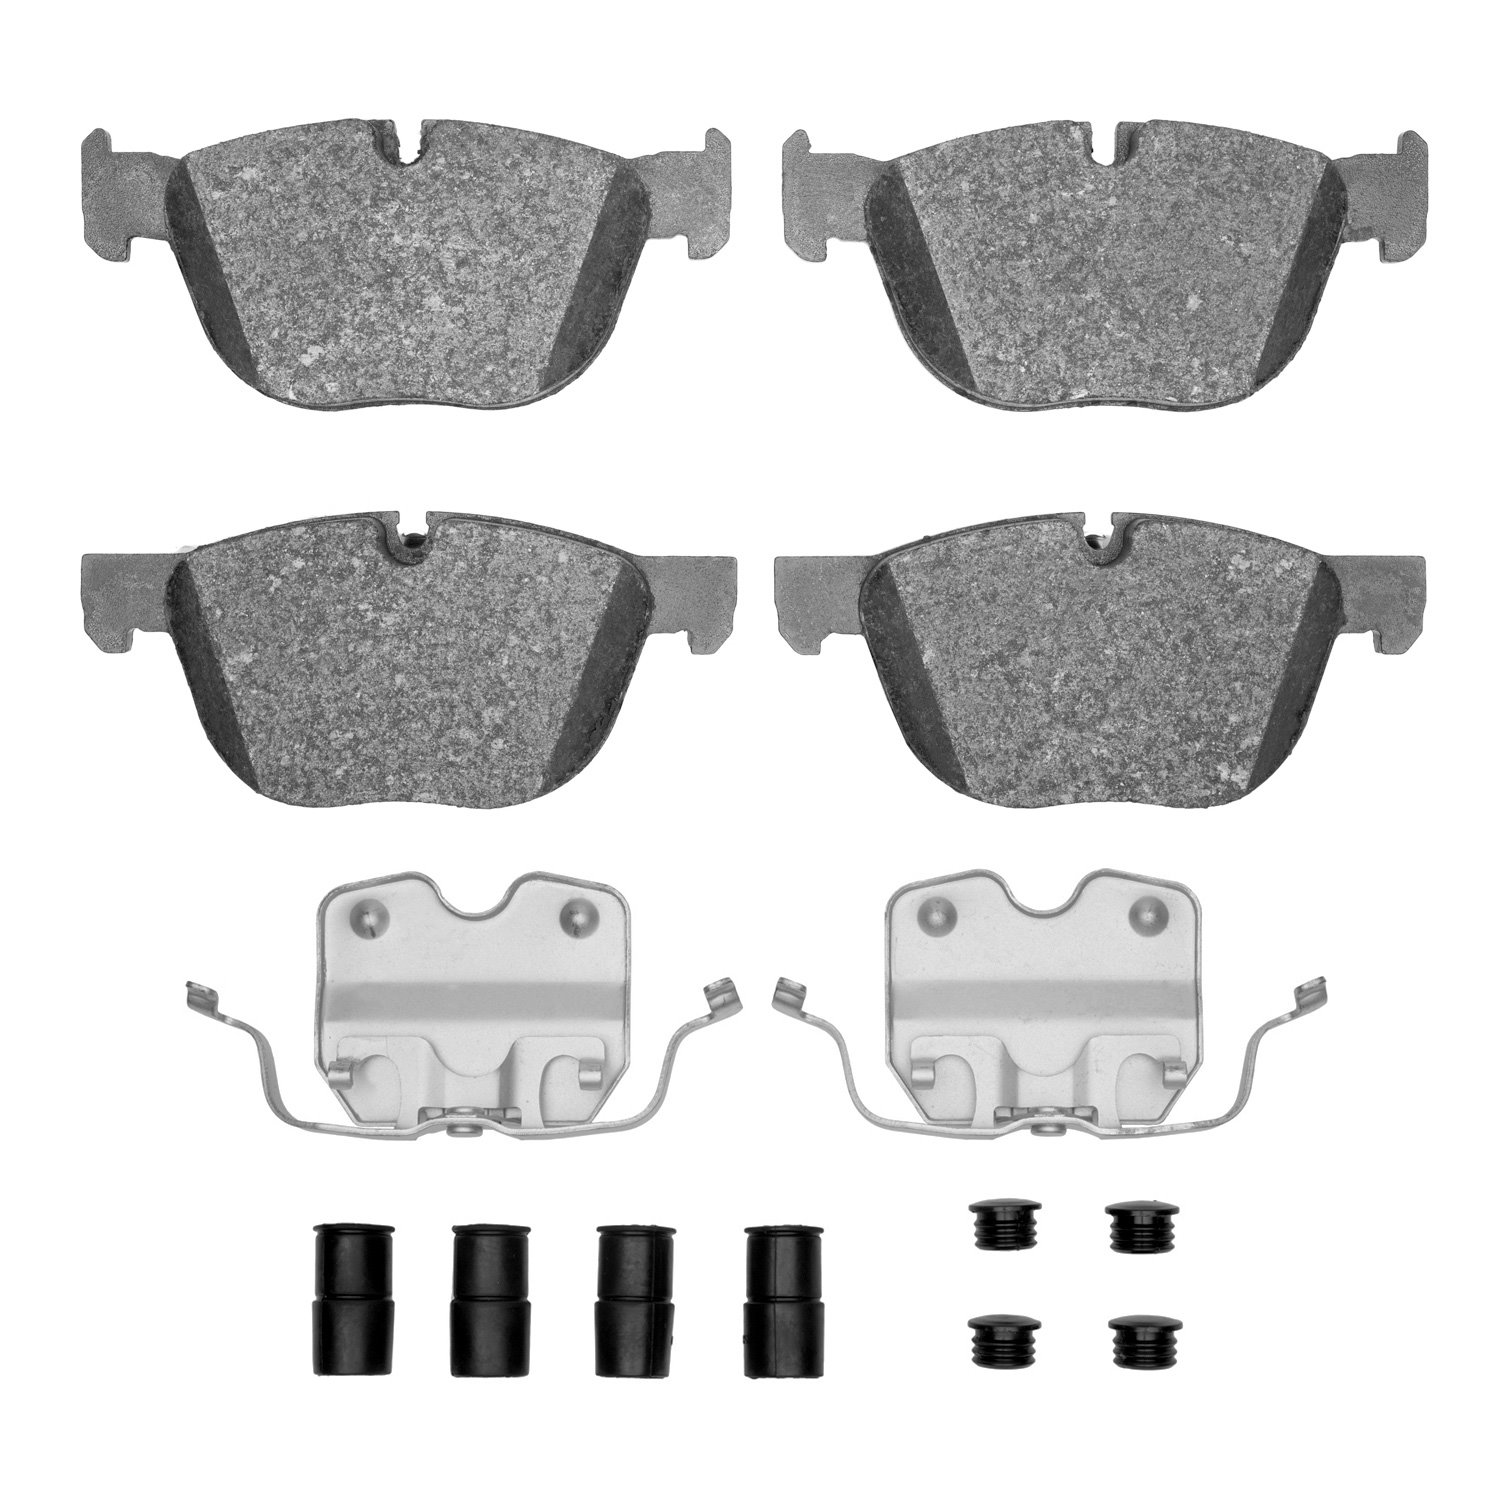 Semi-Metallic Brake Pads & Hardware Kit, 2007-2019 BMW, Position: Front